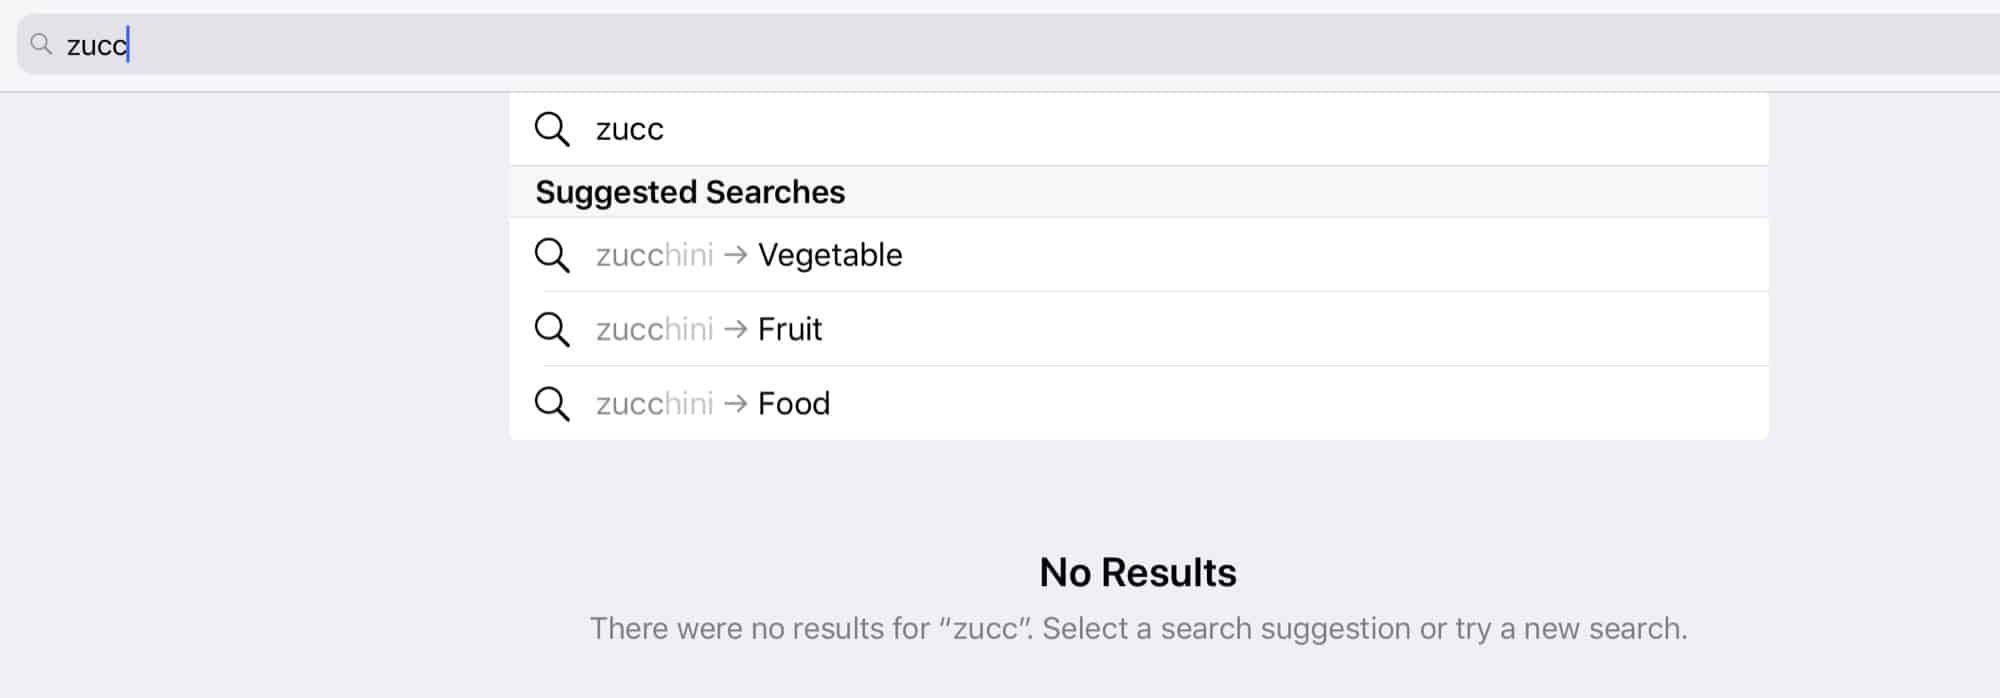 Zucchini as fruit?!